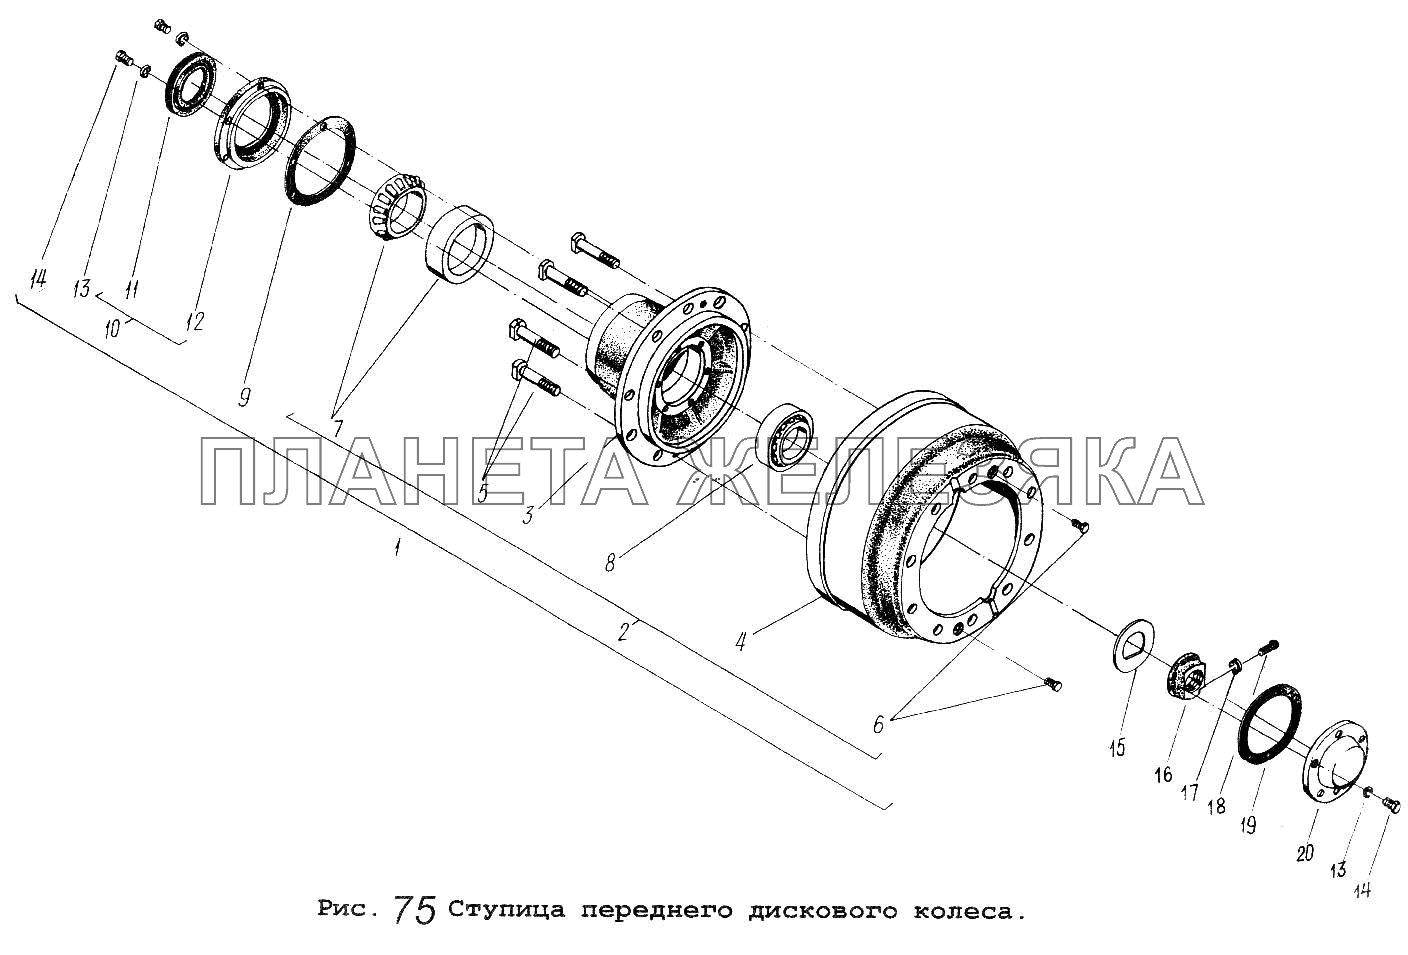 Ступица переднего дискового колеса МАЗ-64229